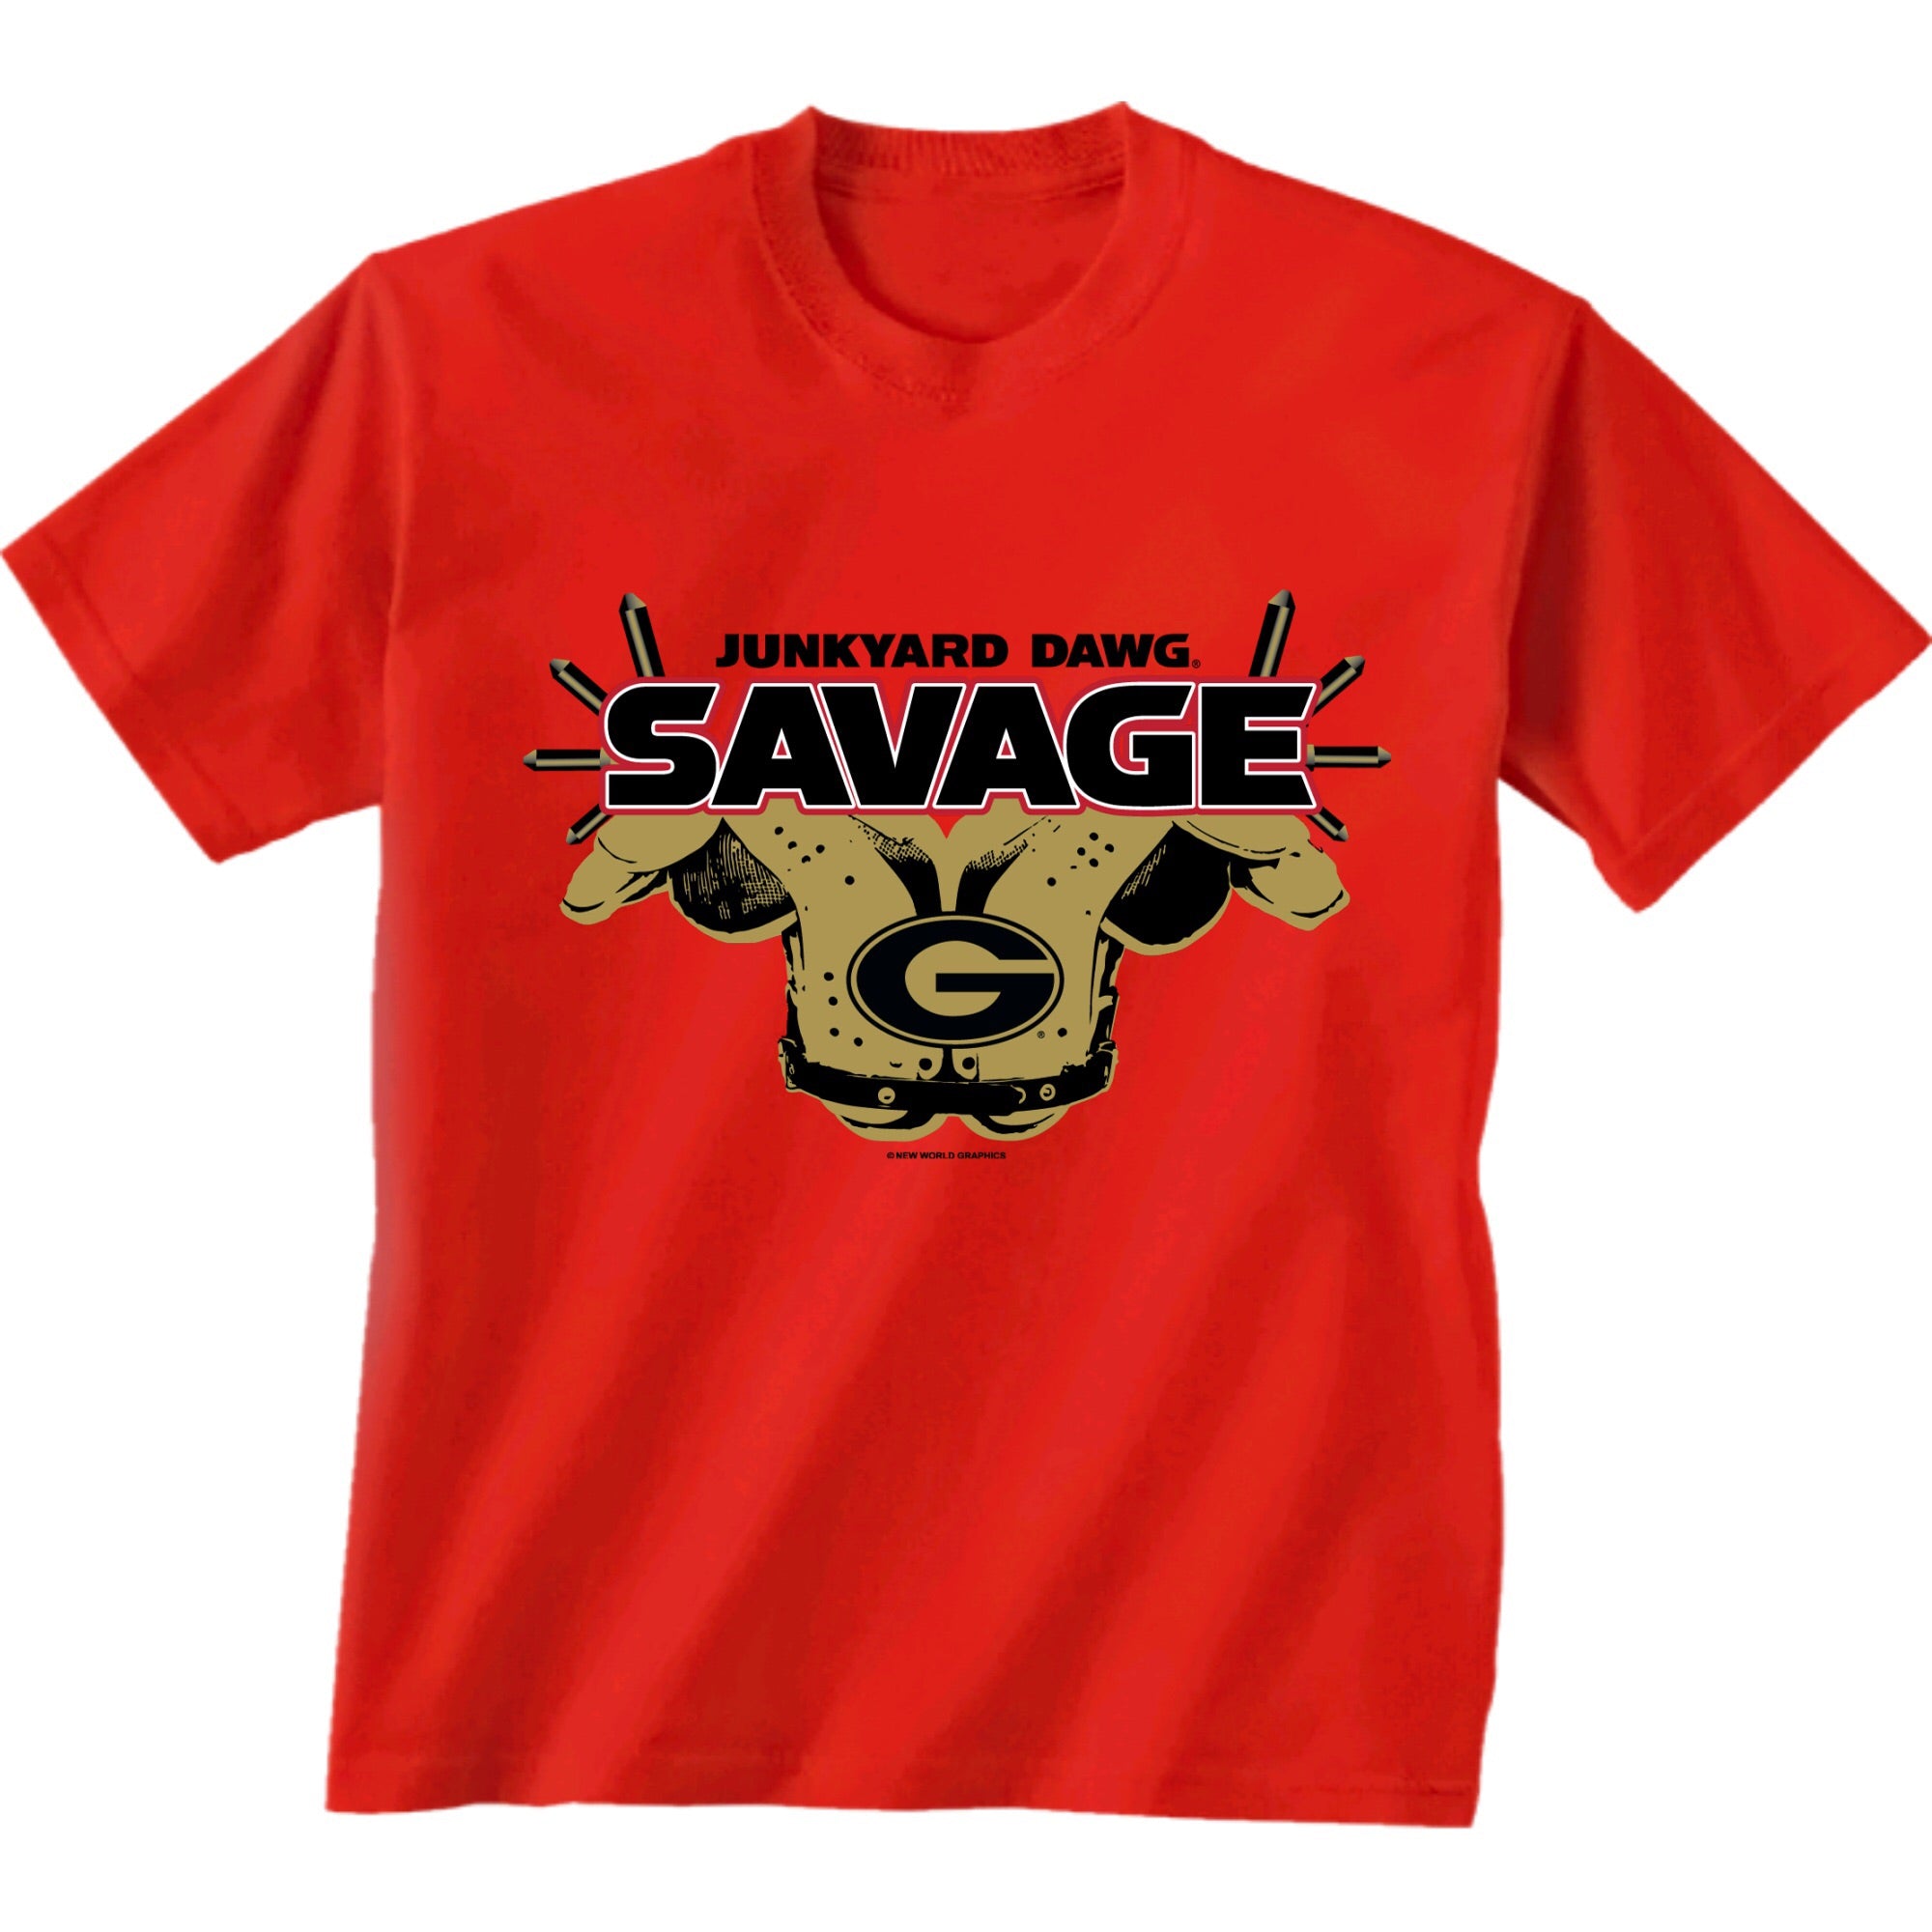 UGA "Savage" Junkyard Dawg